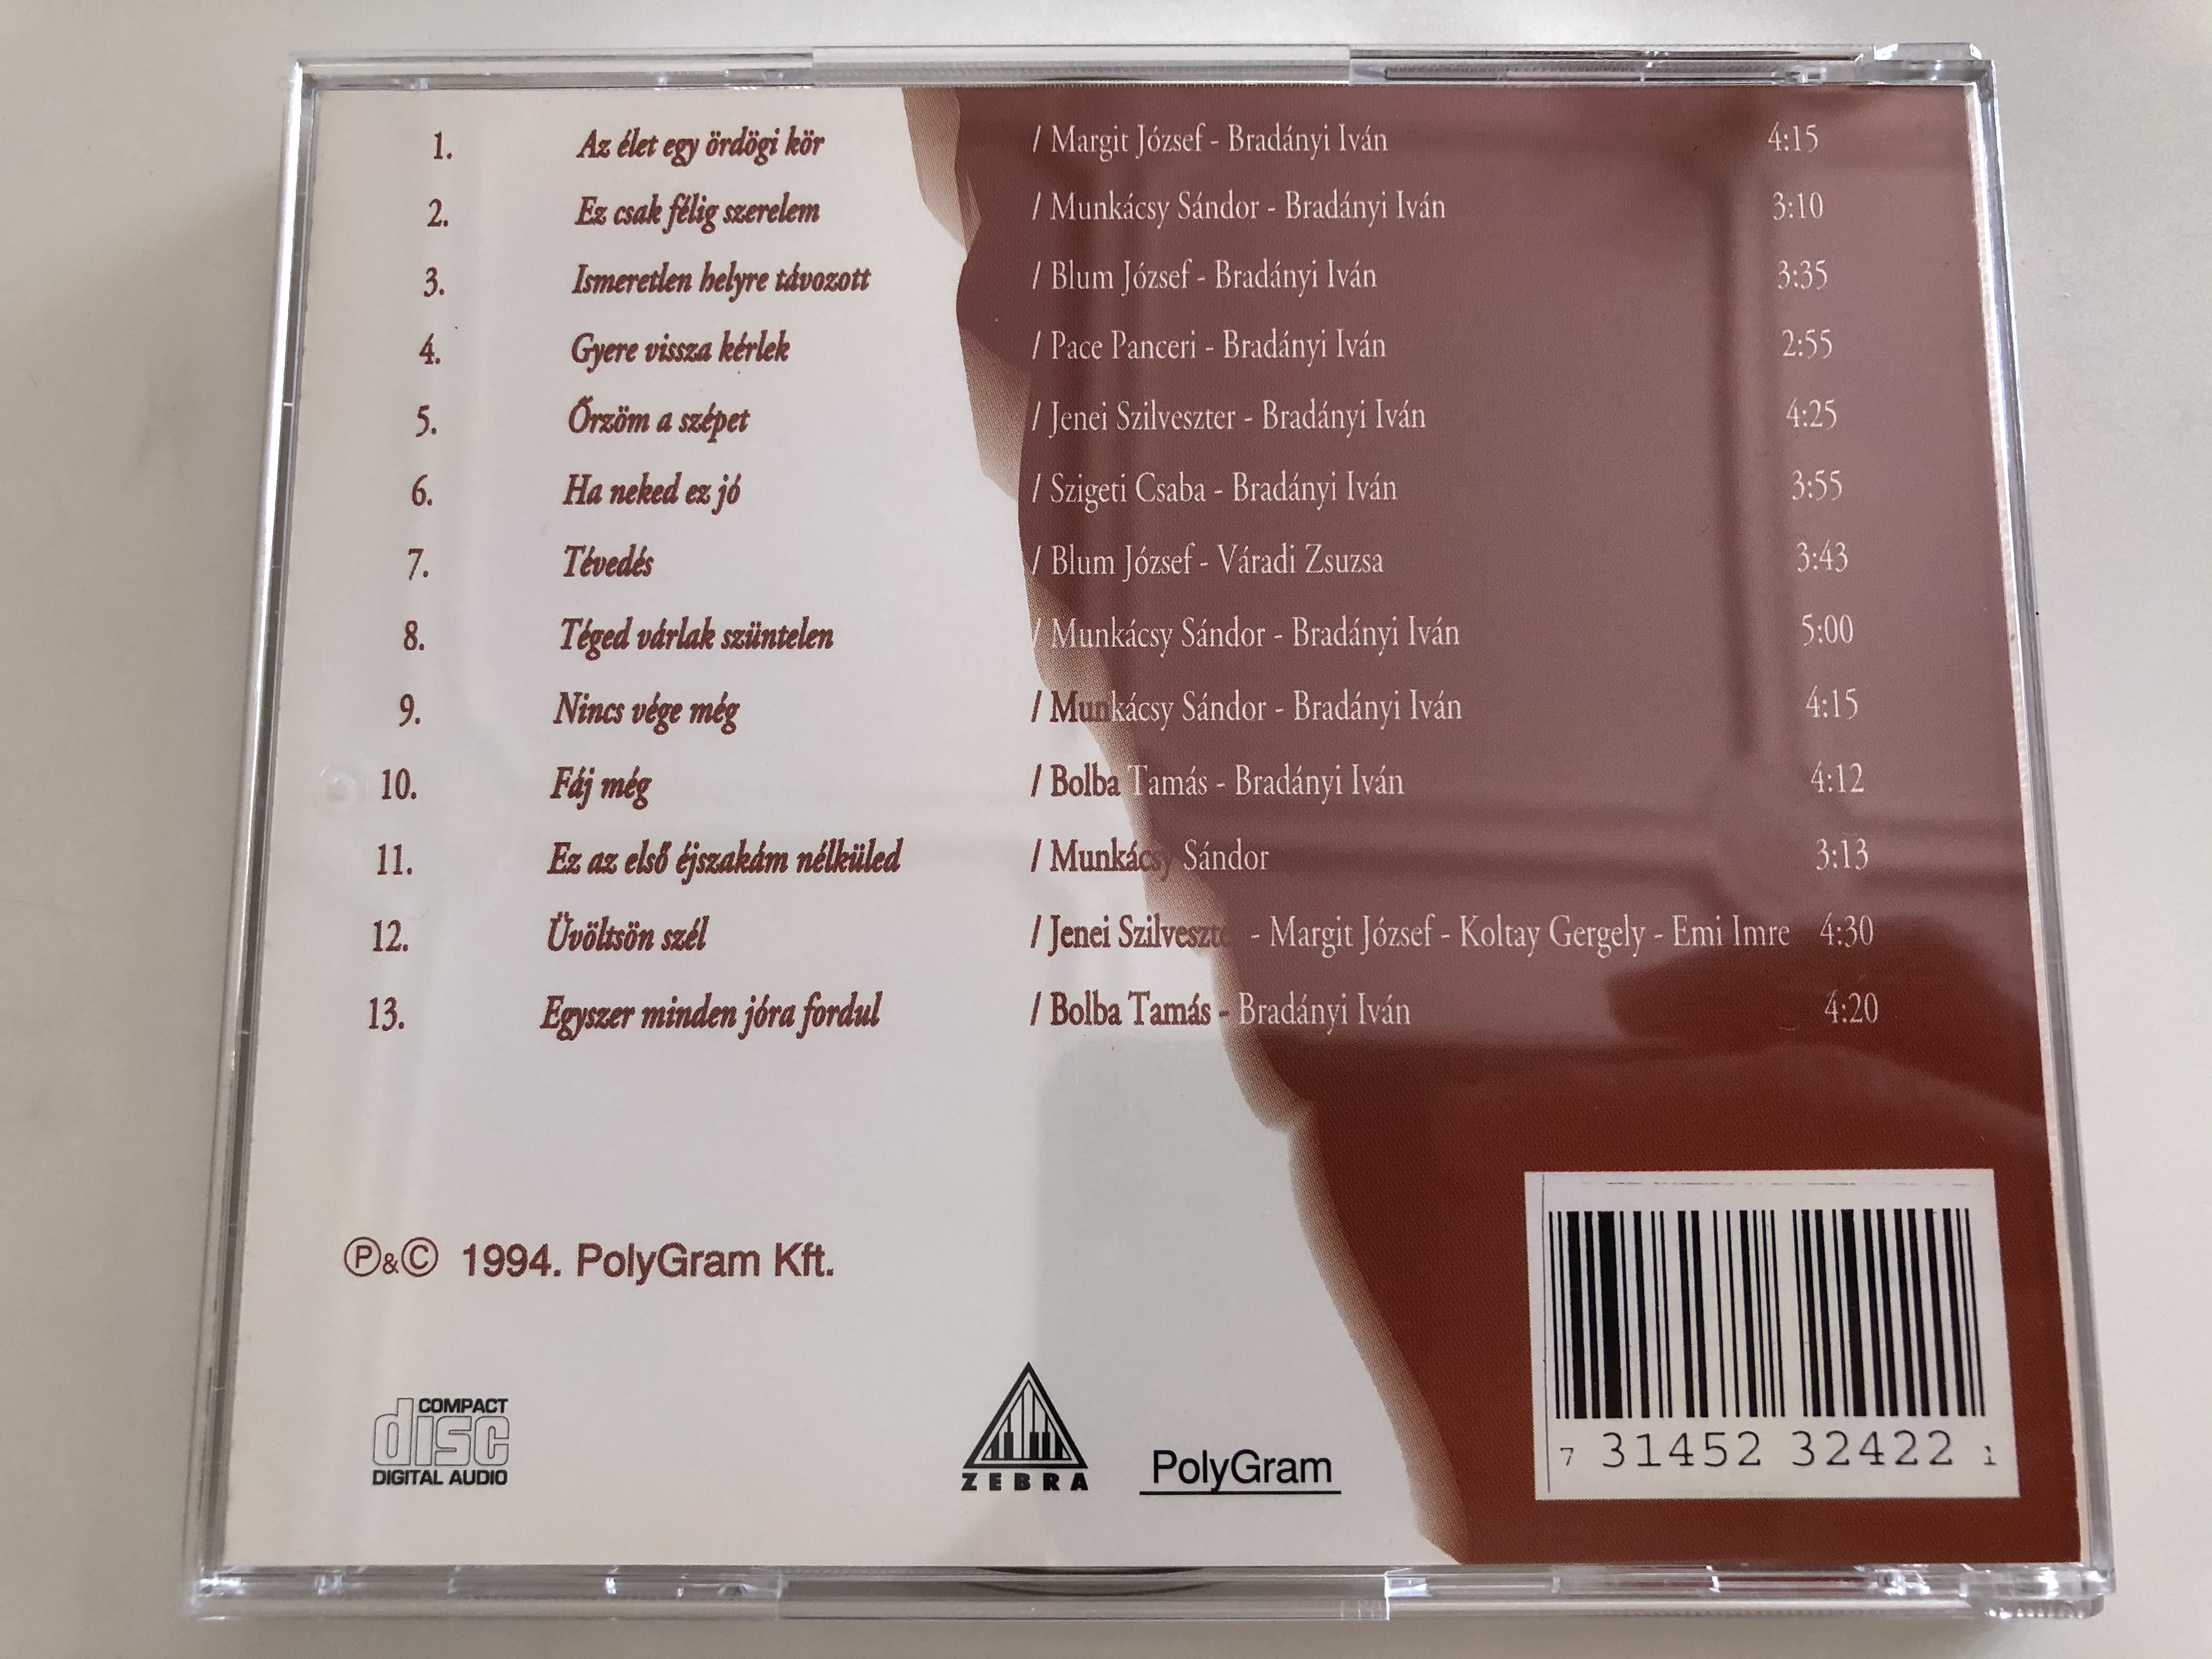 gombos-l-szl-az-els-jszak-m...-polygram-audio-cd-1994-523242-2-6-.jpg